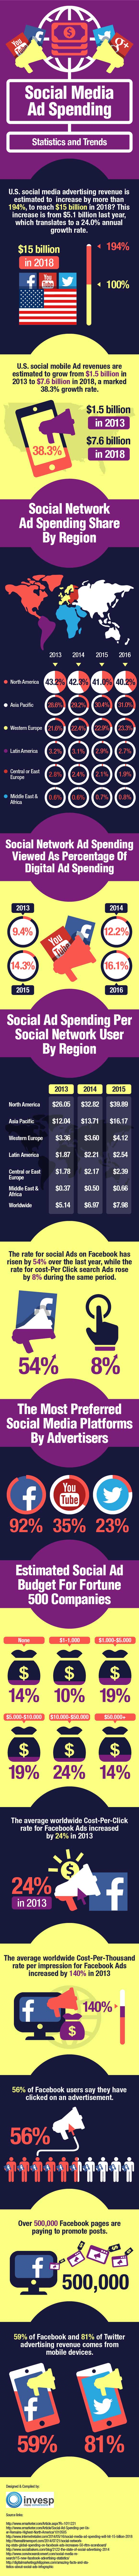 social-media-ad-spends.jpg